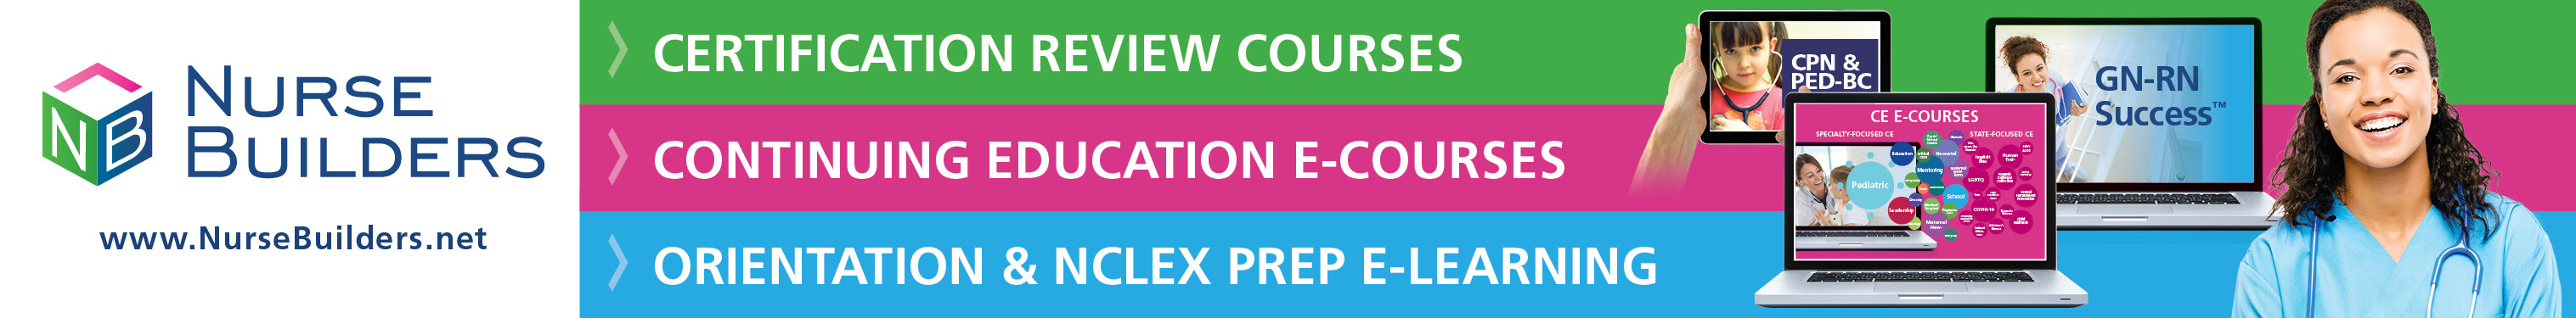 Nurse Builders. Certification Review Courses. Continuing Education E-Courses. Orientation & NCLEX Prep E-Learning. www.nursebuilders.net